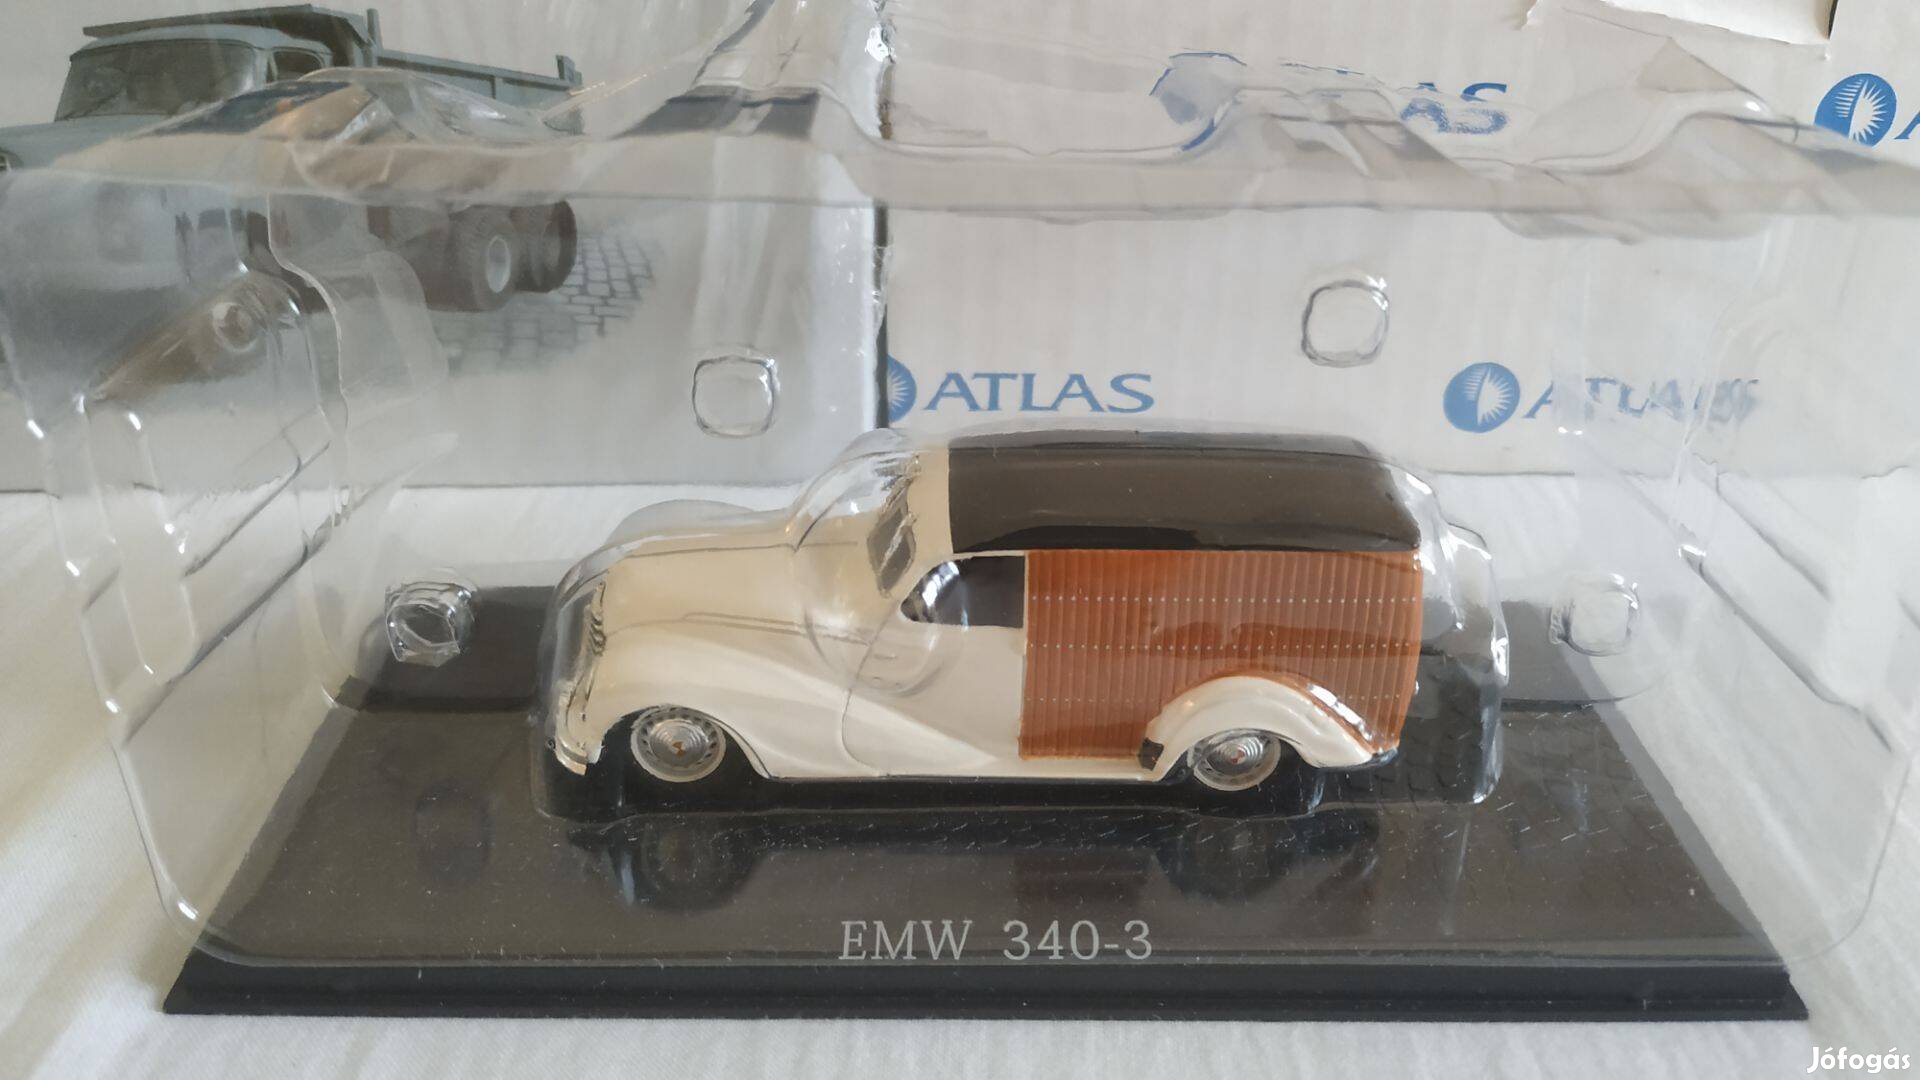 EMW 340-3 1:43 ATLAS modell autó dobozában